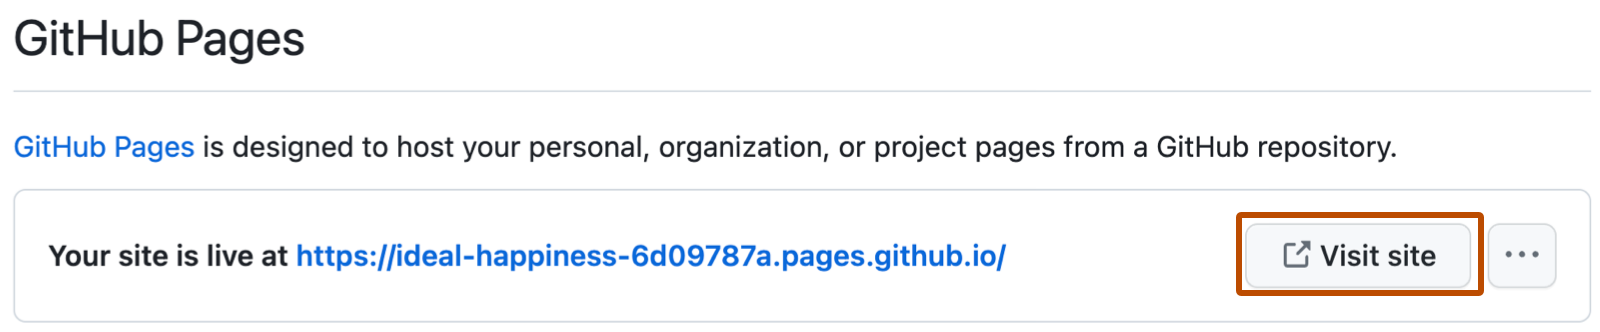 GitHub Pages の確認メッセージのスクリーンショット。サイトの URL が一覧表示されています。 長くて青い URL の右側に "サイトにアクセス" というラベルのボタンが濃いオレンジ色で囲まれています。